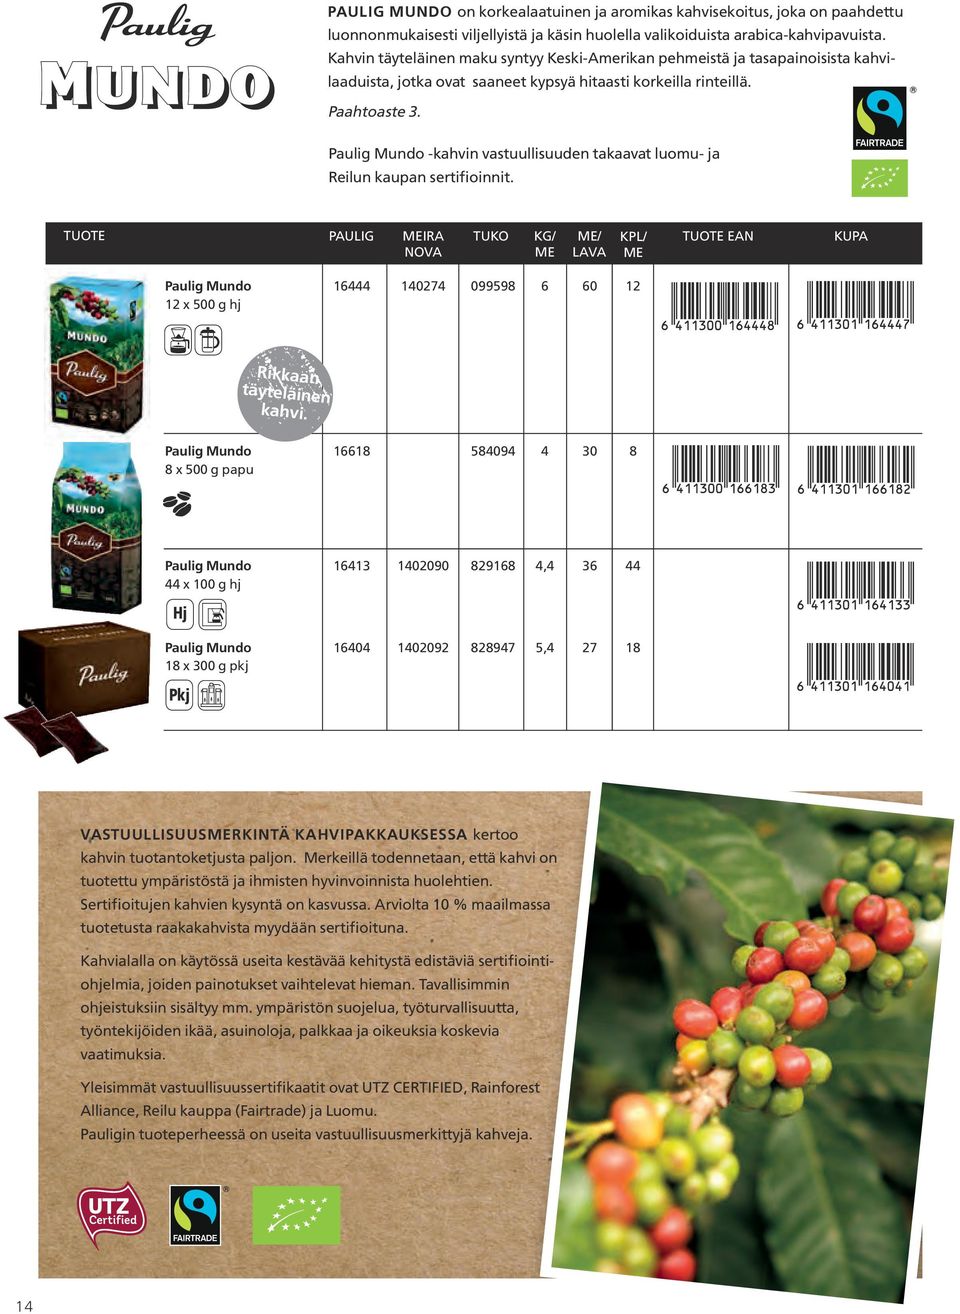 Paulig Mundo -kahvin vastuullisuuden takaavat luomu- ja Reilun kaupan sertifioinnit.